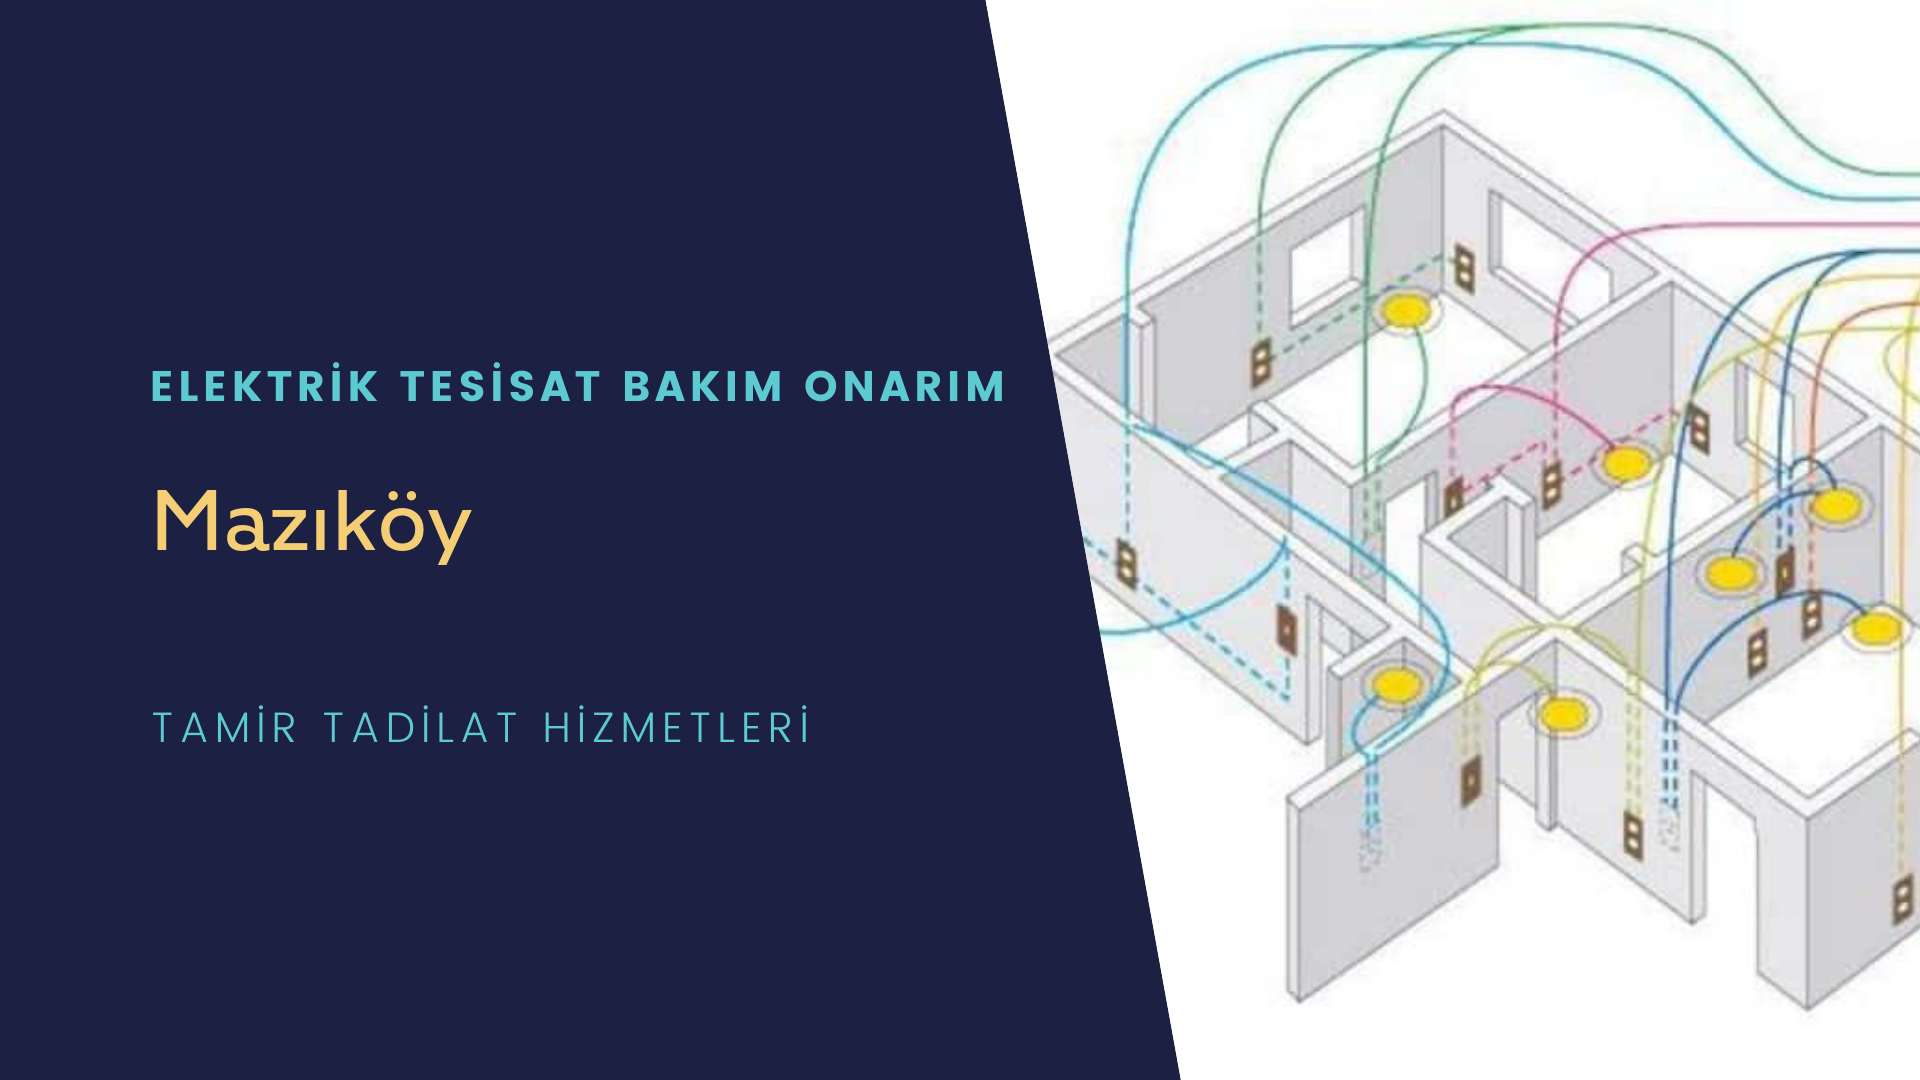 Mazıköy'de elektrik tesisatı ustalarımı arıyorsunuz doğru adrestenizi Mazıköy elektrik tesisatı ustalarımız 7/24 sizlere hizmet vermekten mutluluk duyar.